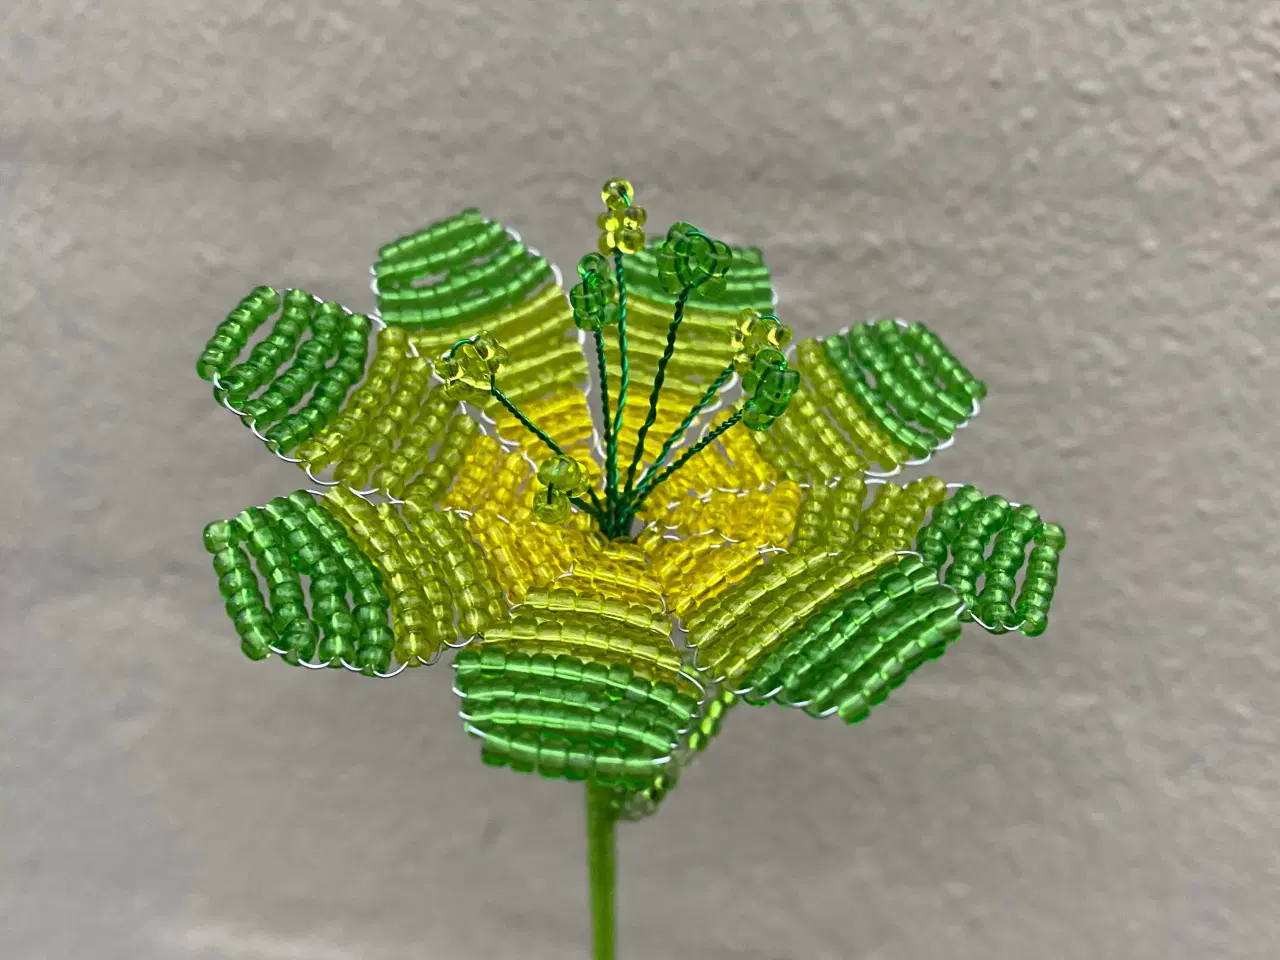 Billede 10 - Unikke evigheds blomster, lavet af perler